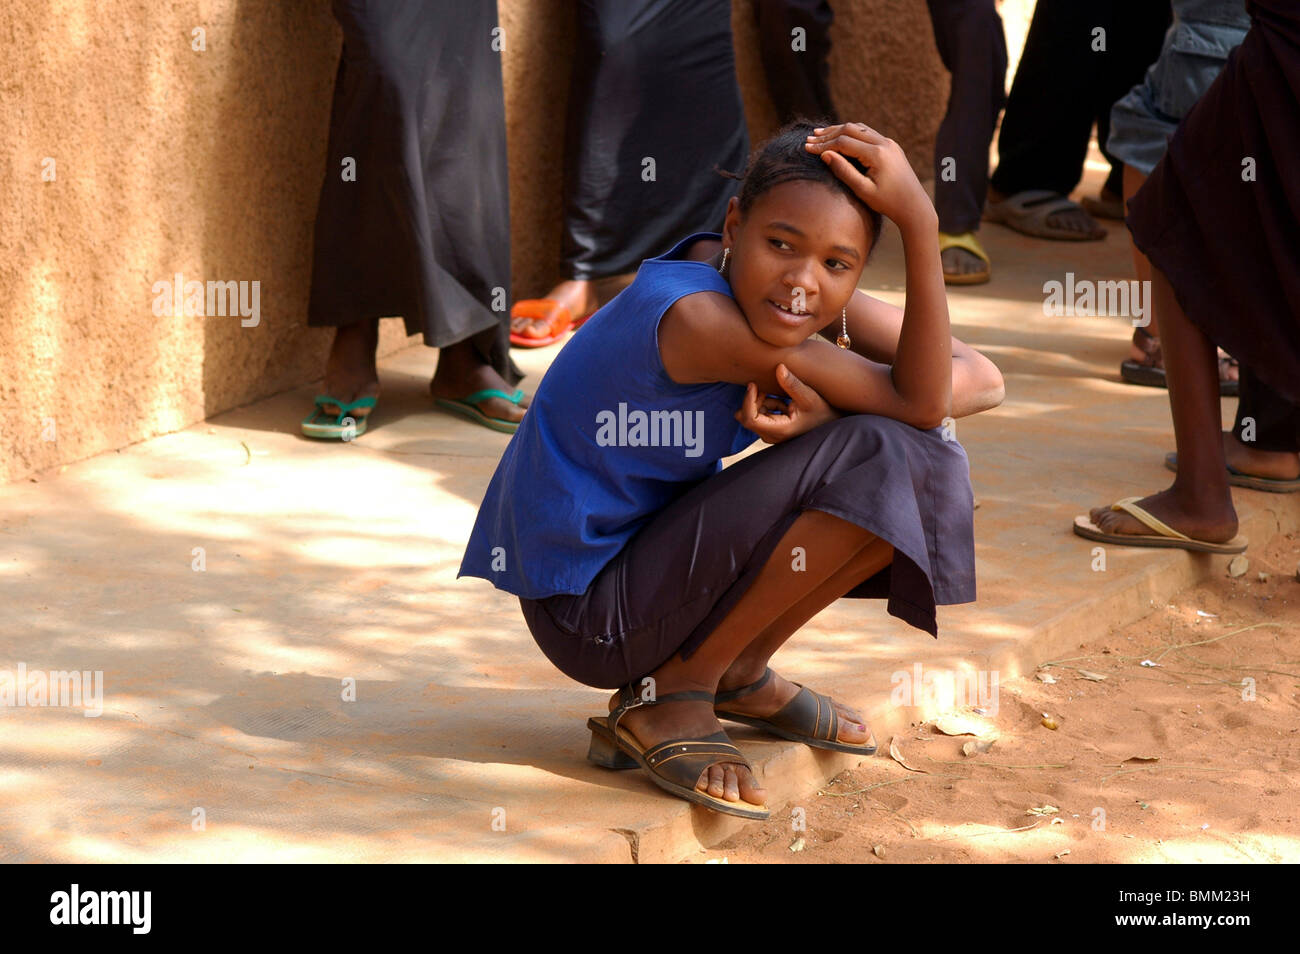 Le Niger, Niamey, Portrait d'un jeune lycéenne dans son uniforme bleu, accroupis. Banque D'Images